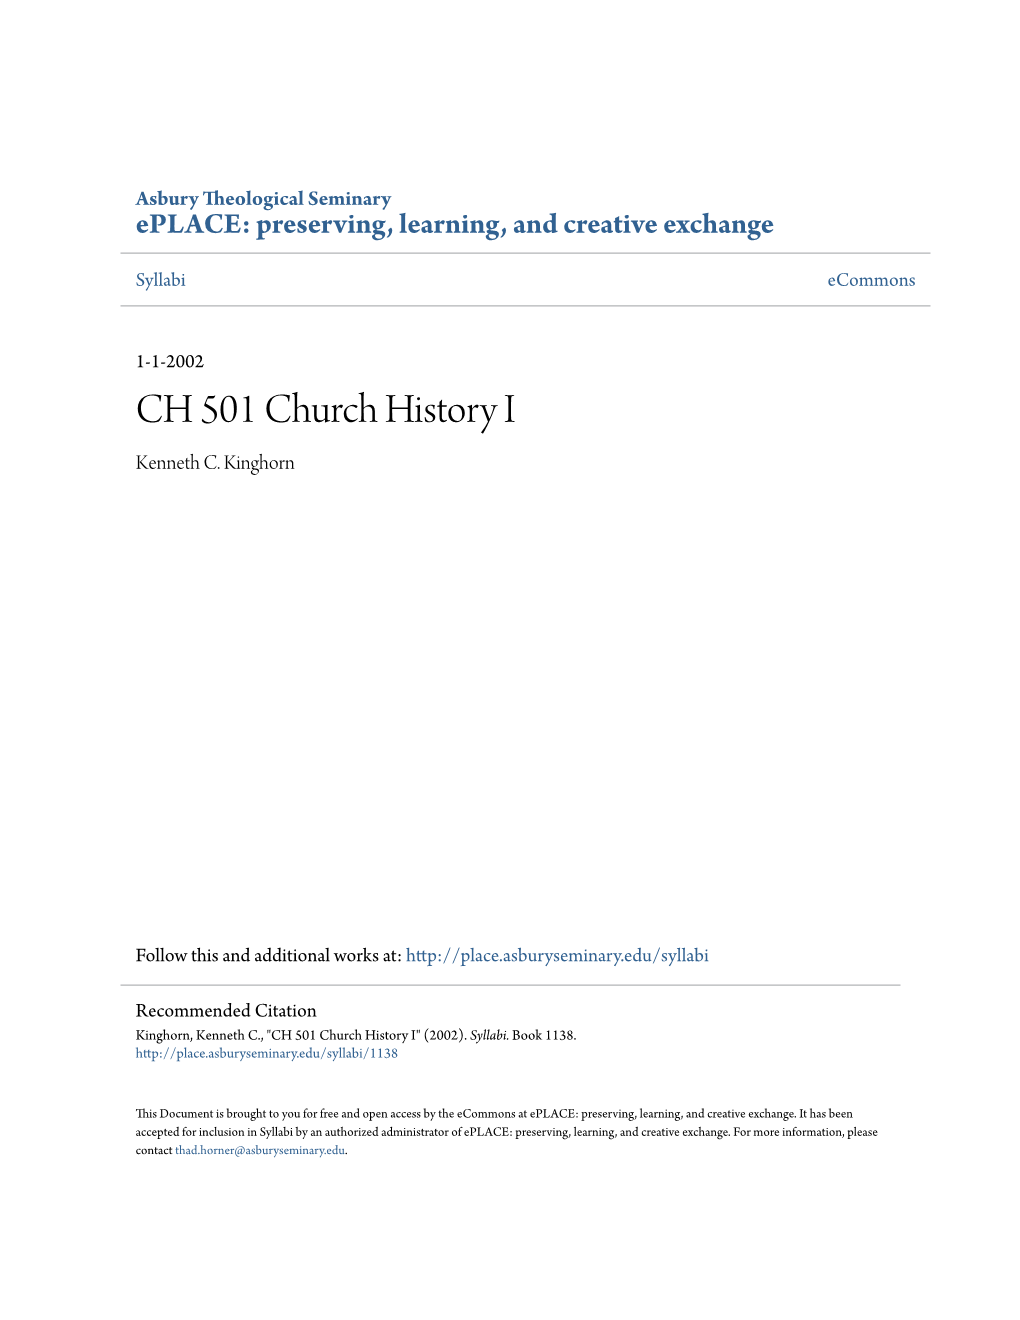 CH 501 Church History I Kenneth C